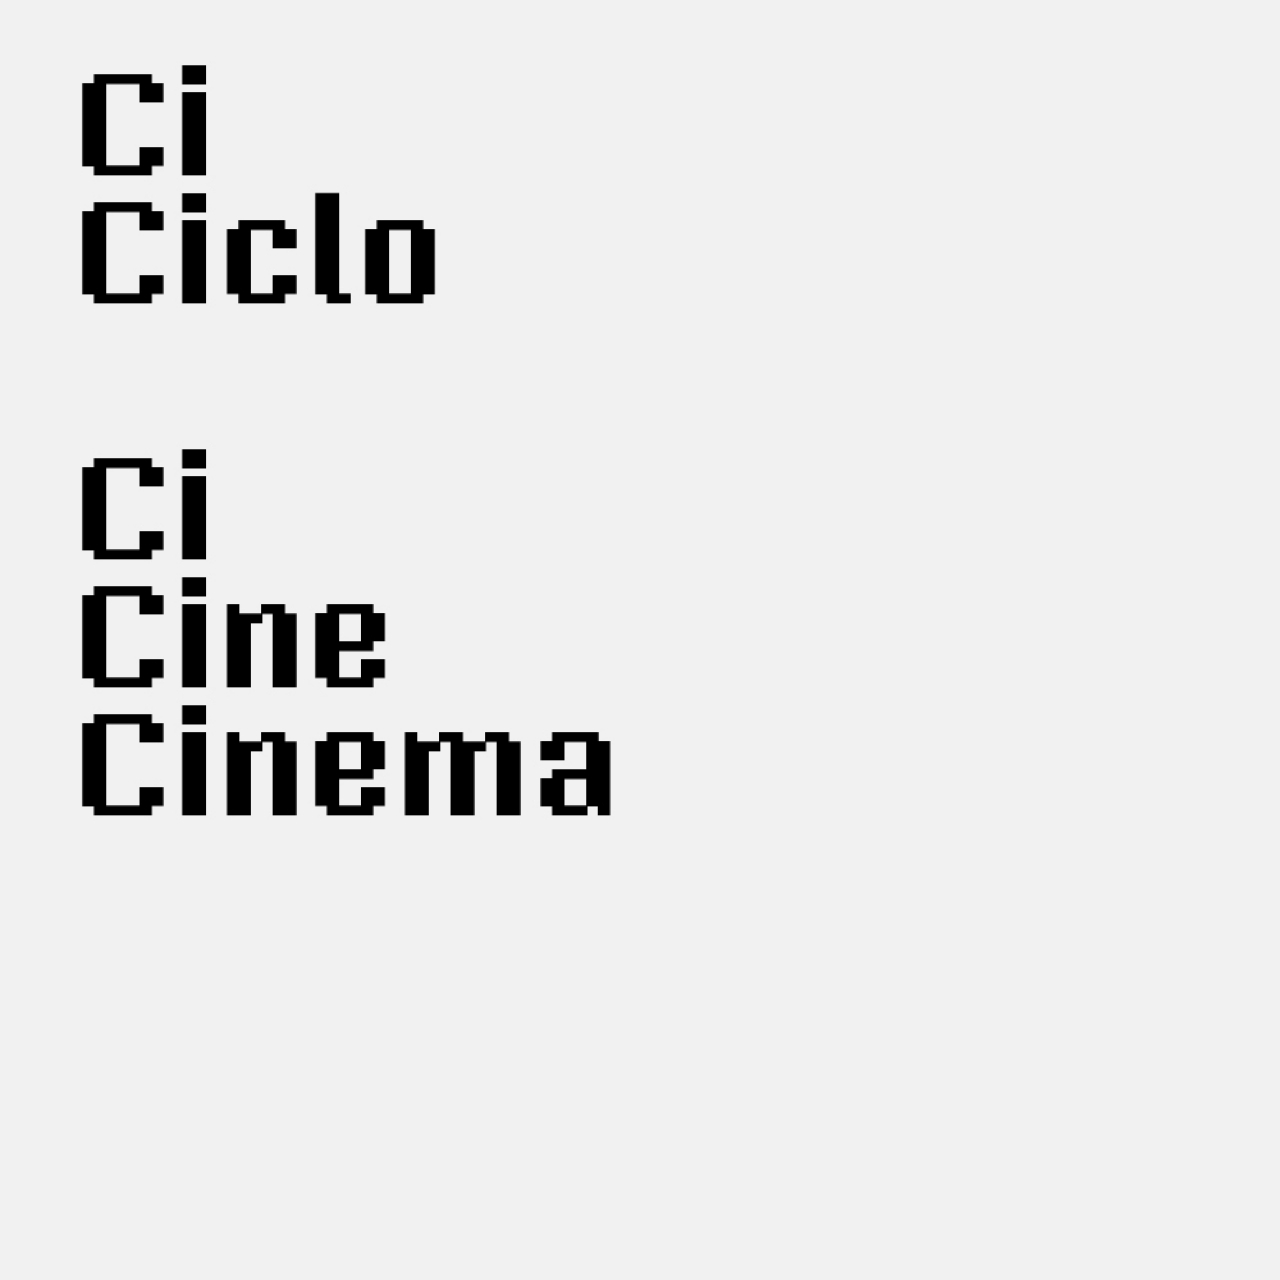 Ciclo de Cinema